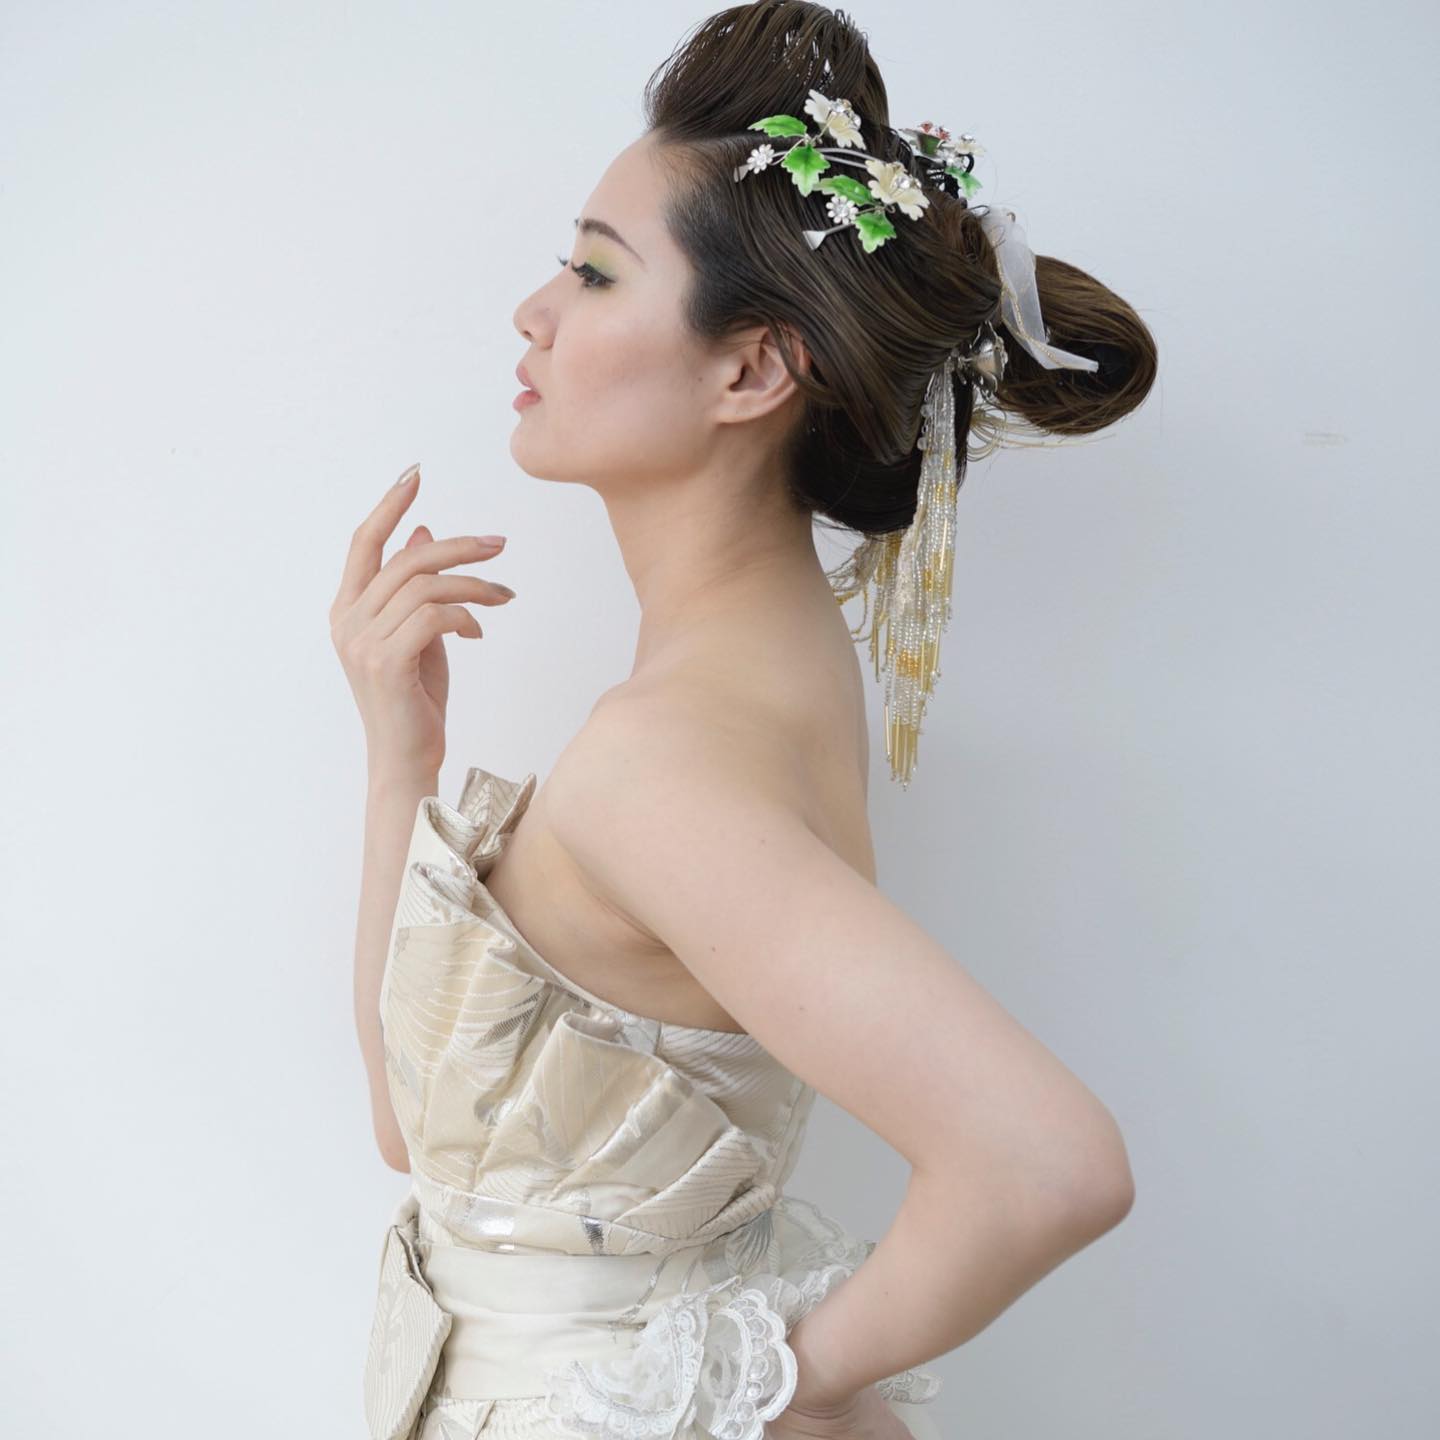 上田美江子さん、﻿ 美容歴40周年記念のショー in Tokyo﻿ ﻿ 美江子さん指導のもと、生徒さんが制作された﻿ 和の美を彩る﻿ 華やかなヘアメイク﻿ ﻿ ホームページでは﻿ たくさんの和ドレスをご紹介しています﻿ @aliansa